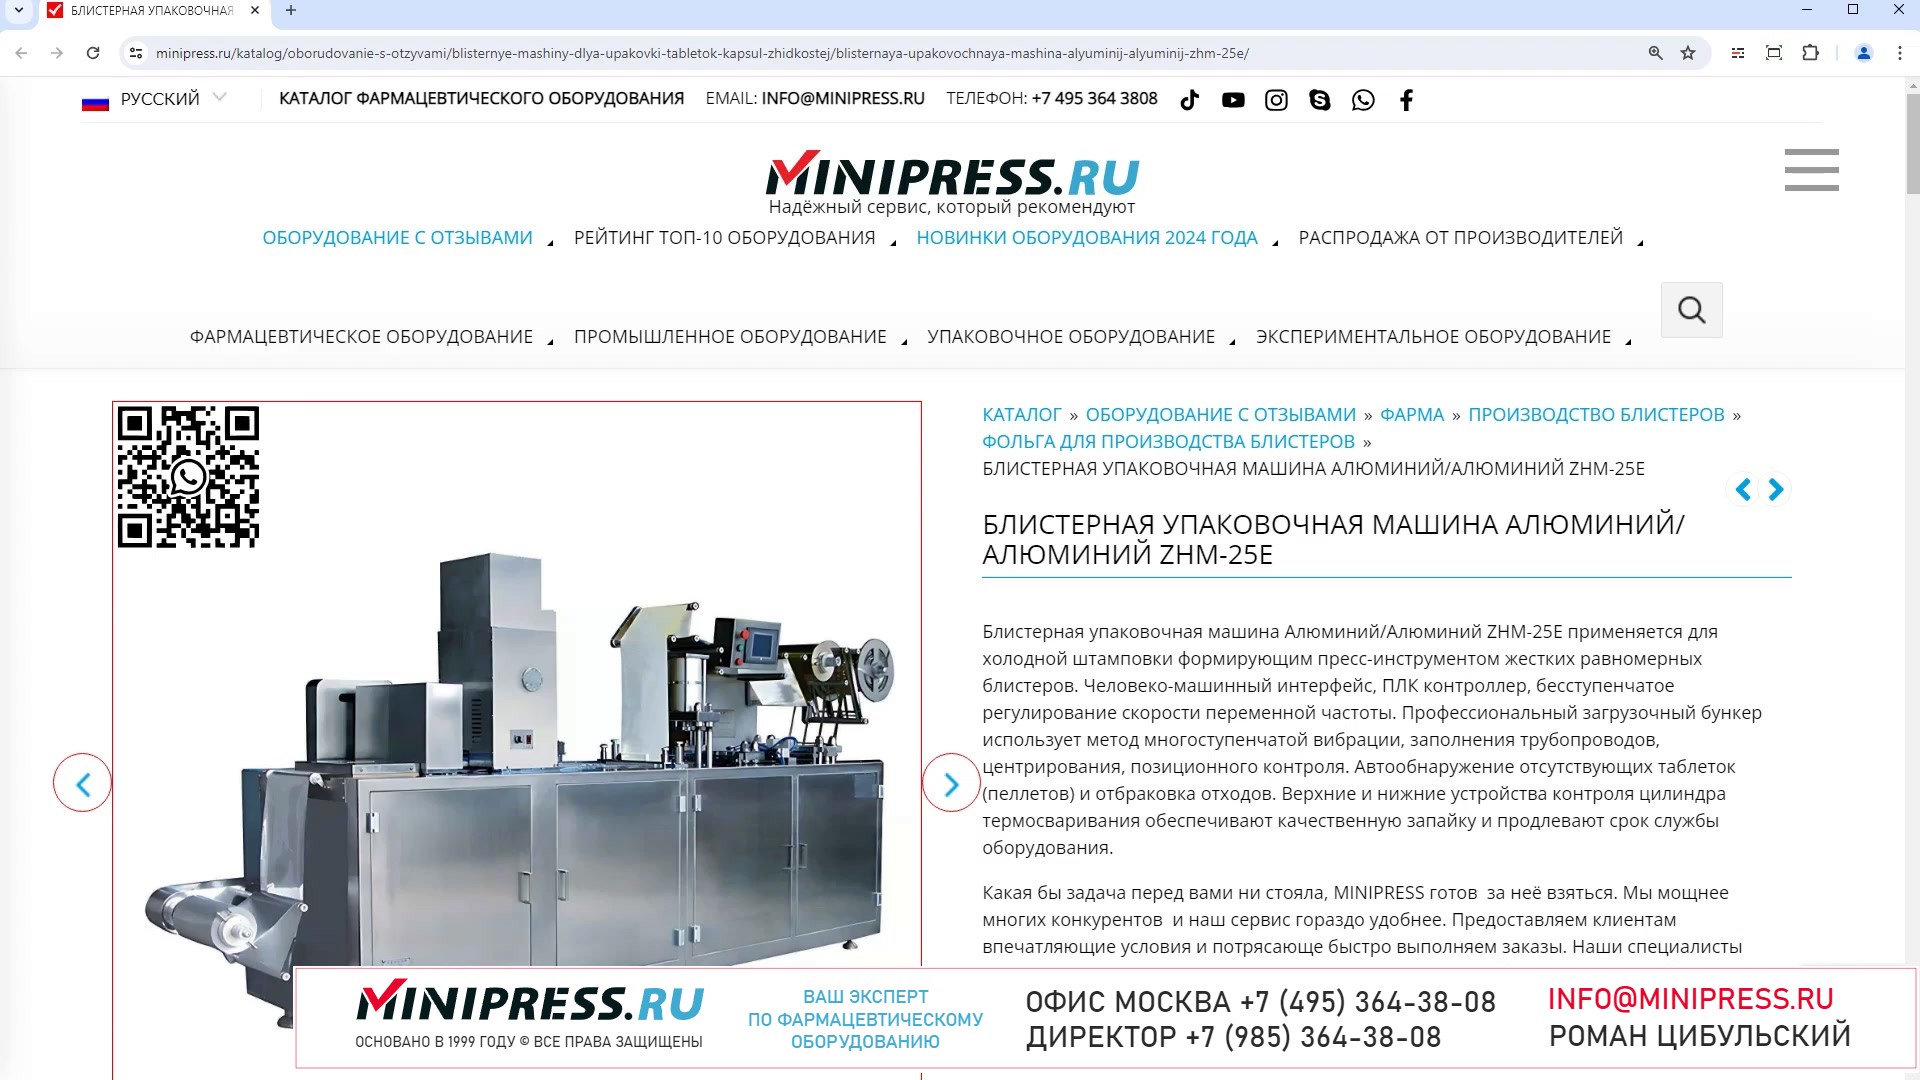 Minipress.ru Блистерная упаковочная машина АлюминийАлюминий ZHM-25E